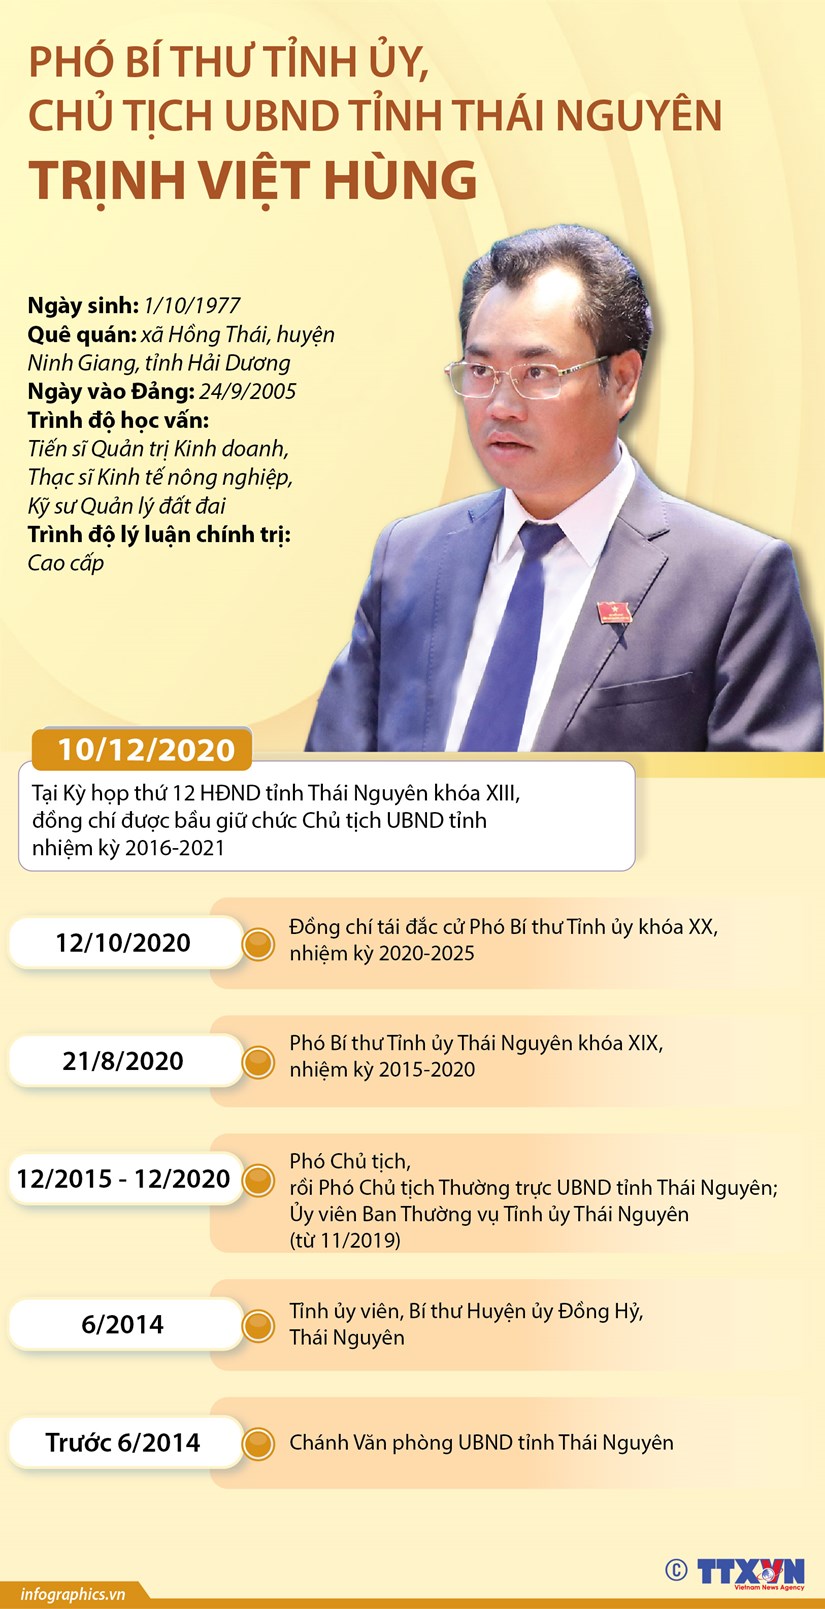 [Infographics] Tieu su Chu tich UBND tinh Thai Nguyen Trinh Viet Hung hinh anh 1